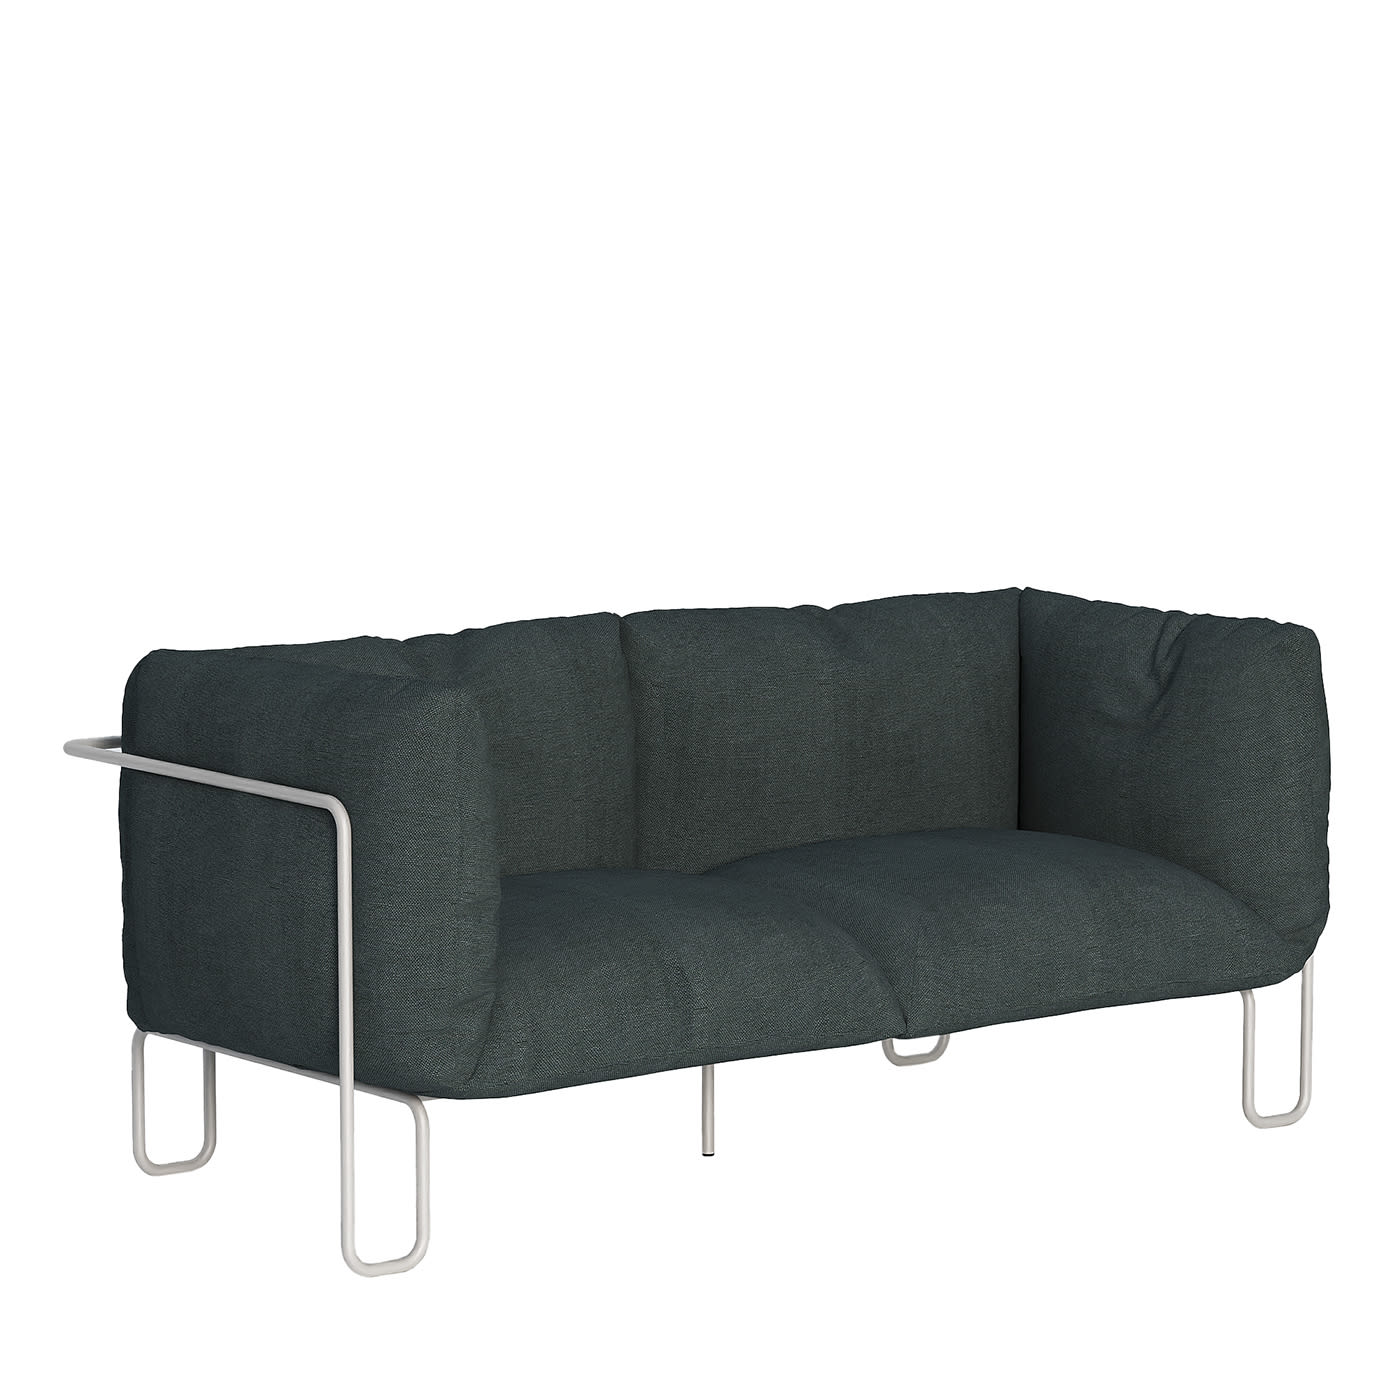 FARGO SOFT 150 indoor couch - petrol grey linen - spHaus